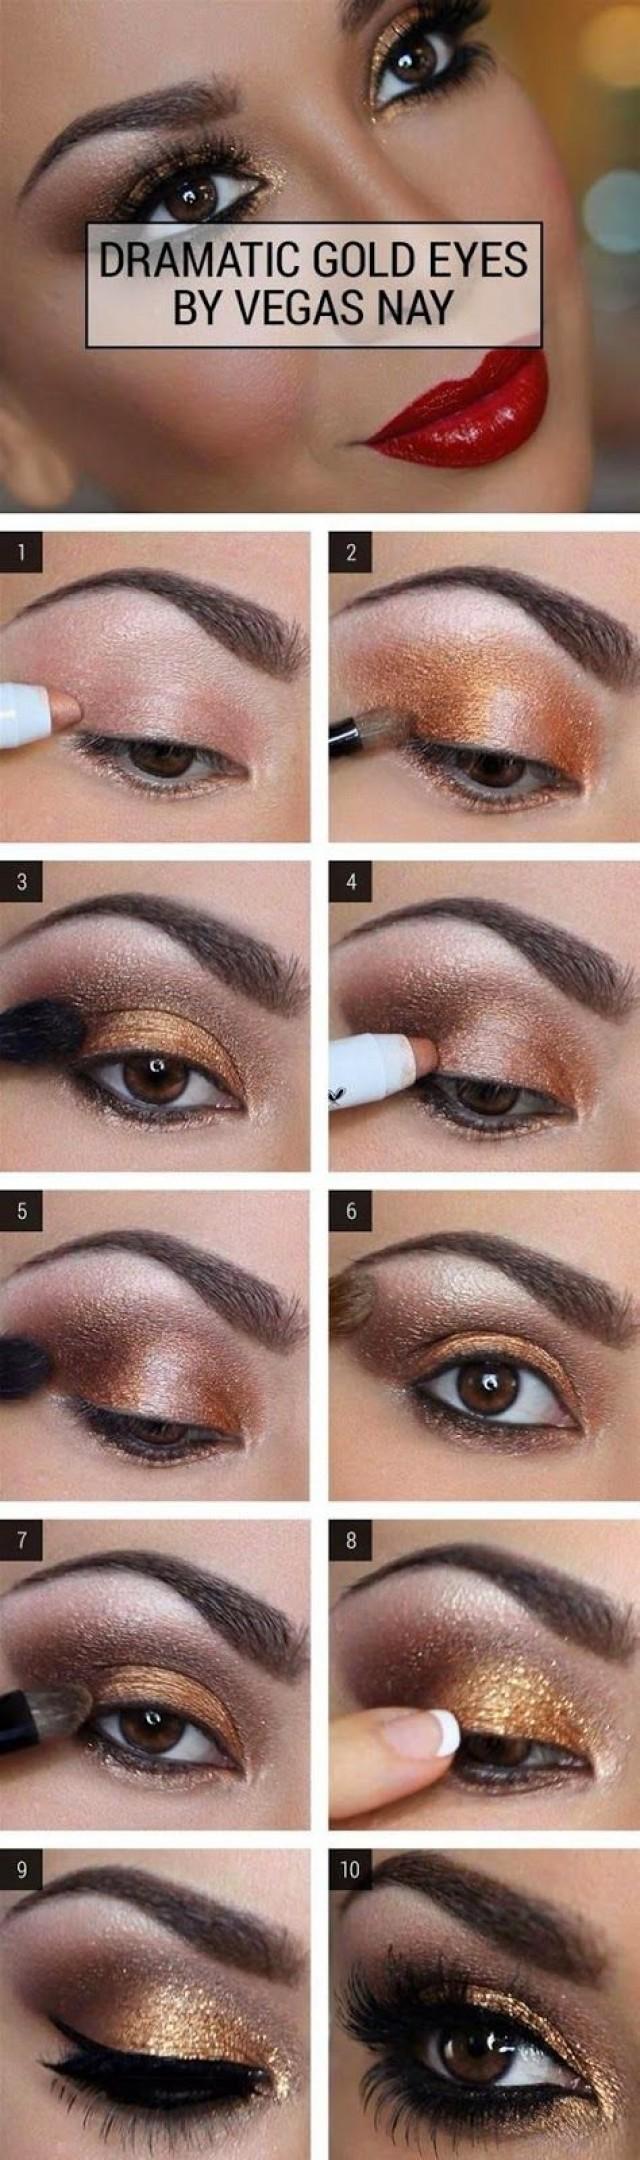 smokey eye makeup for brown eyes tutorial